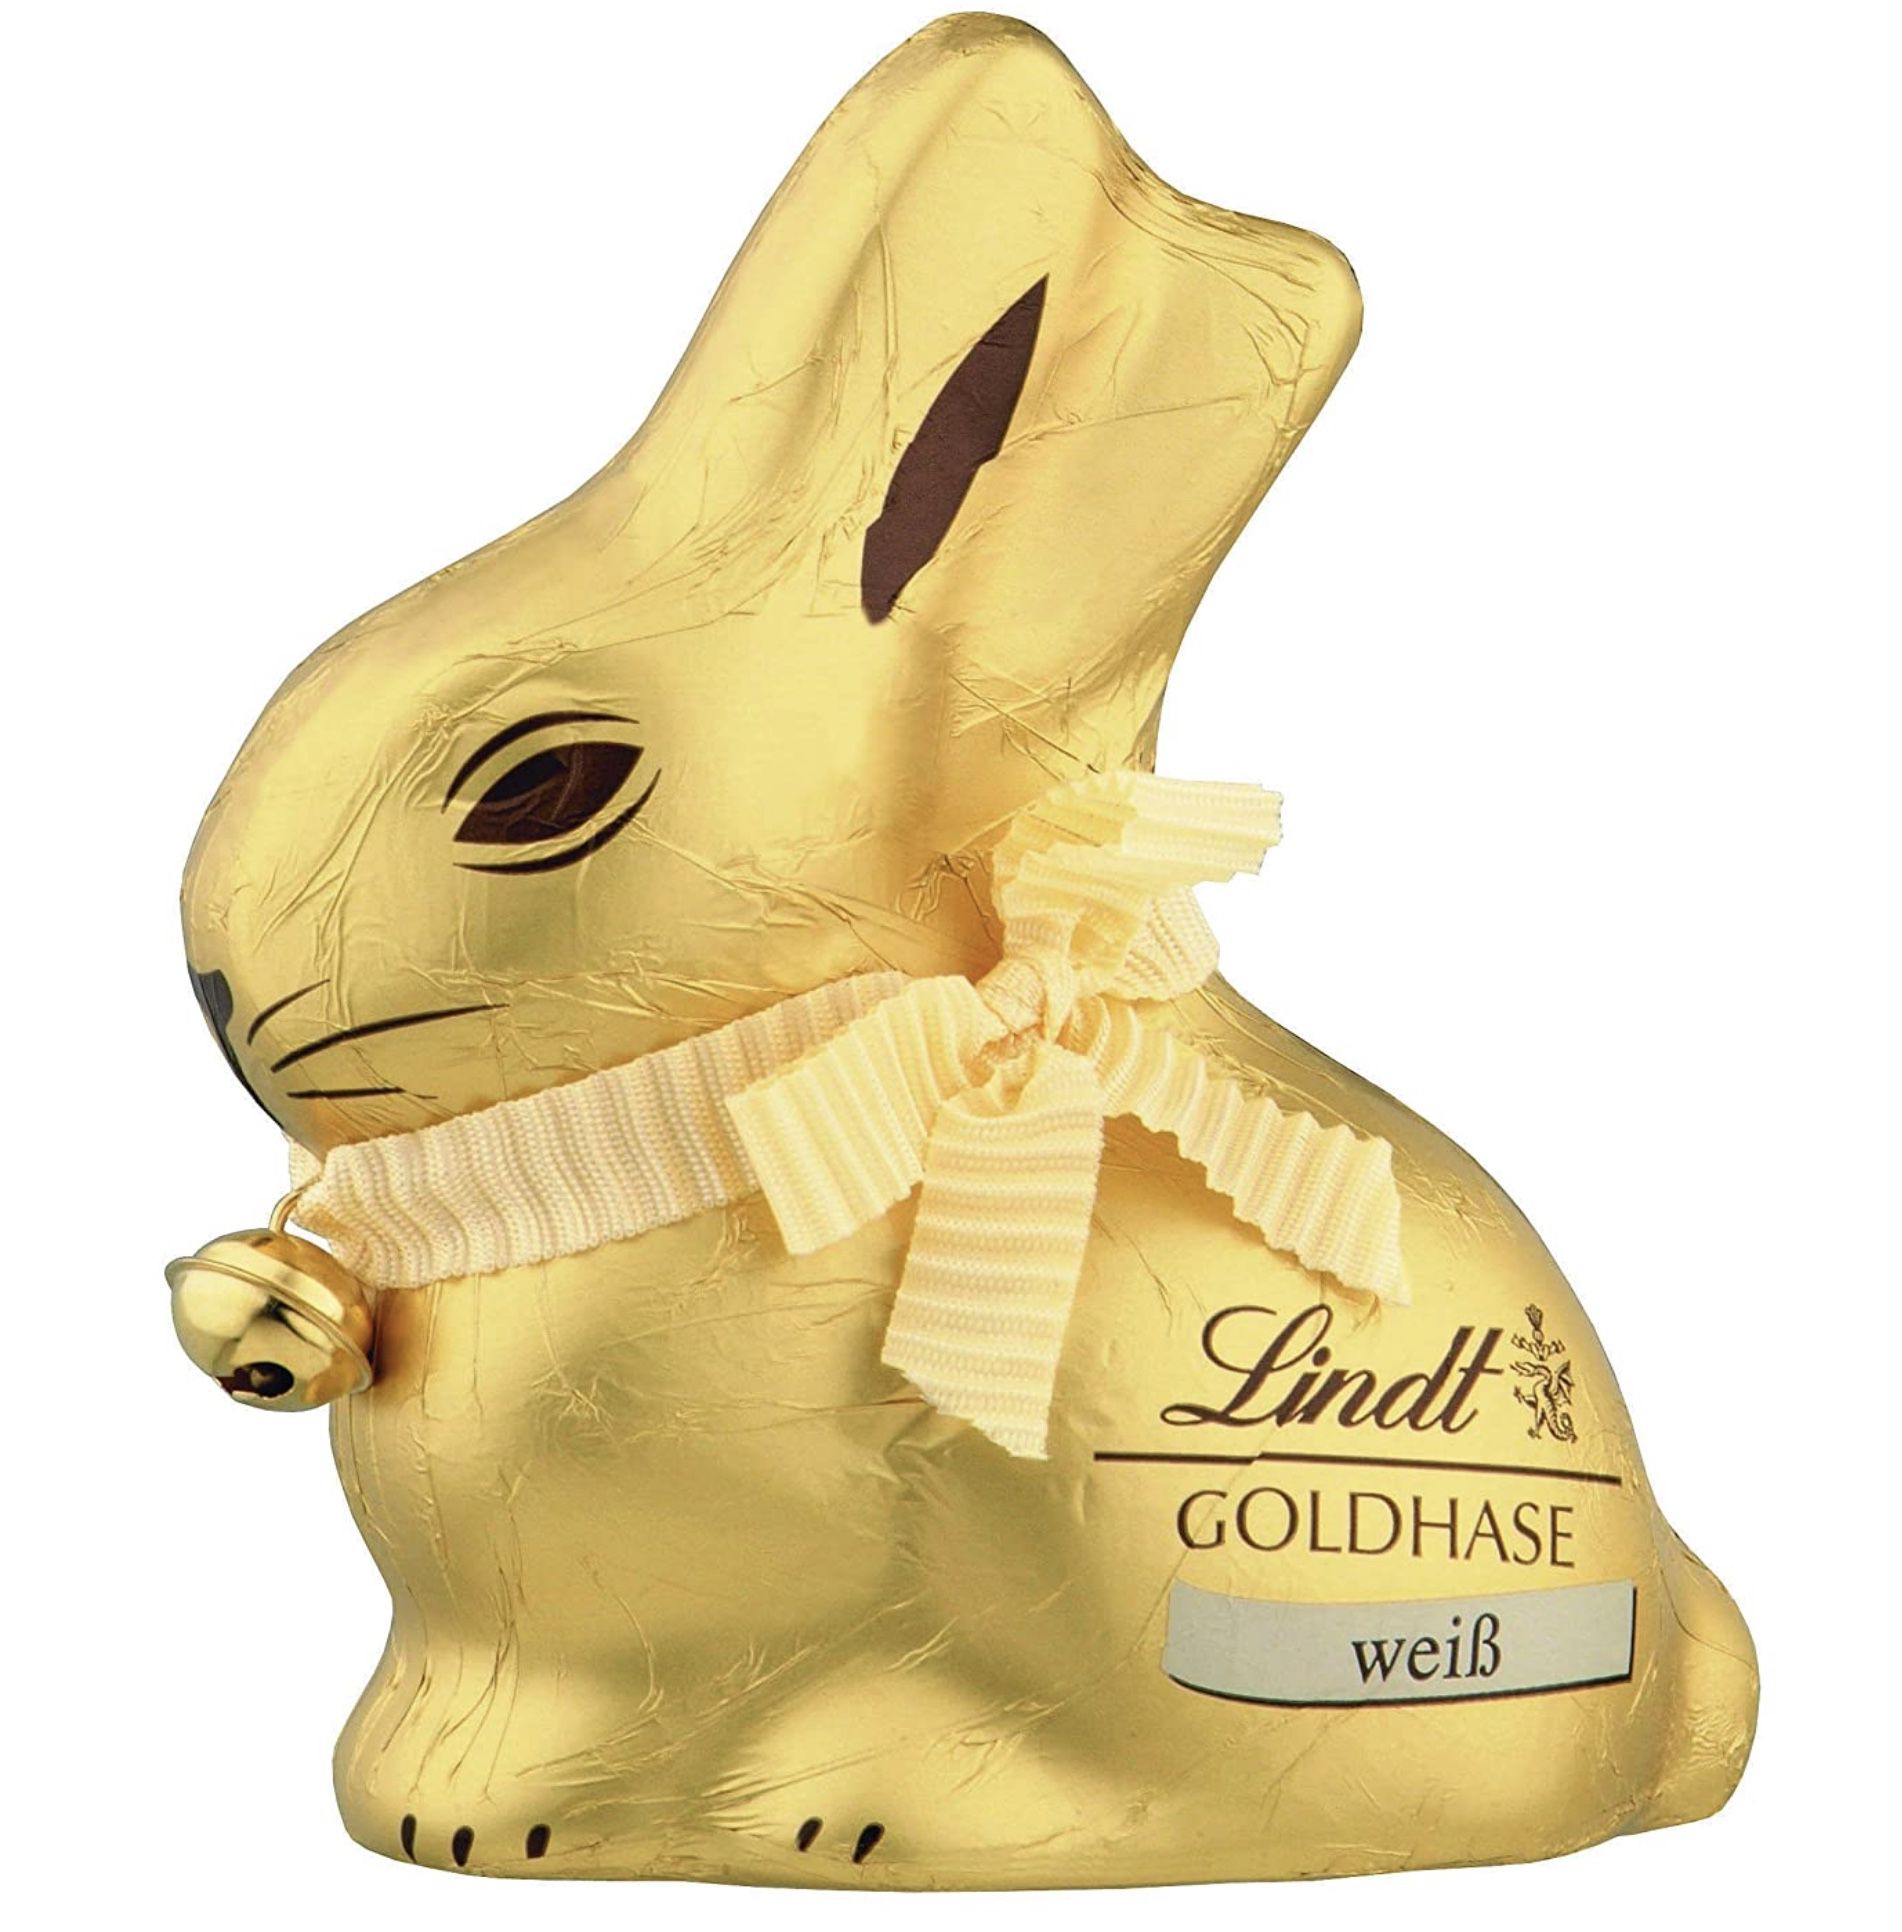 4x Lindt Goldhase Premium Weiße-Schokolade je 100g für 11,69€ (statt 14€)